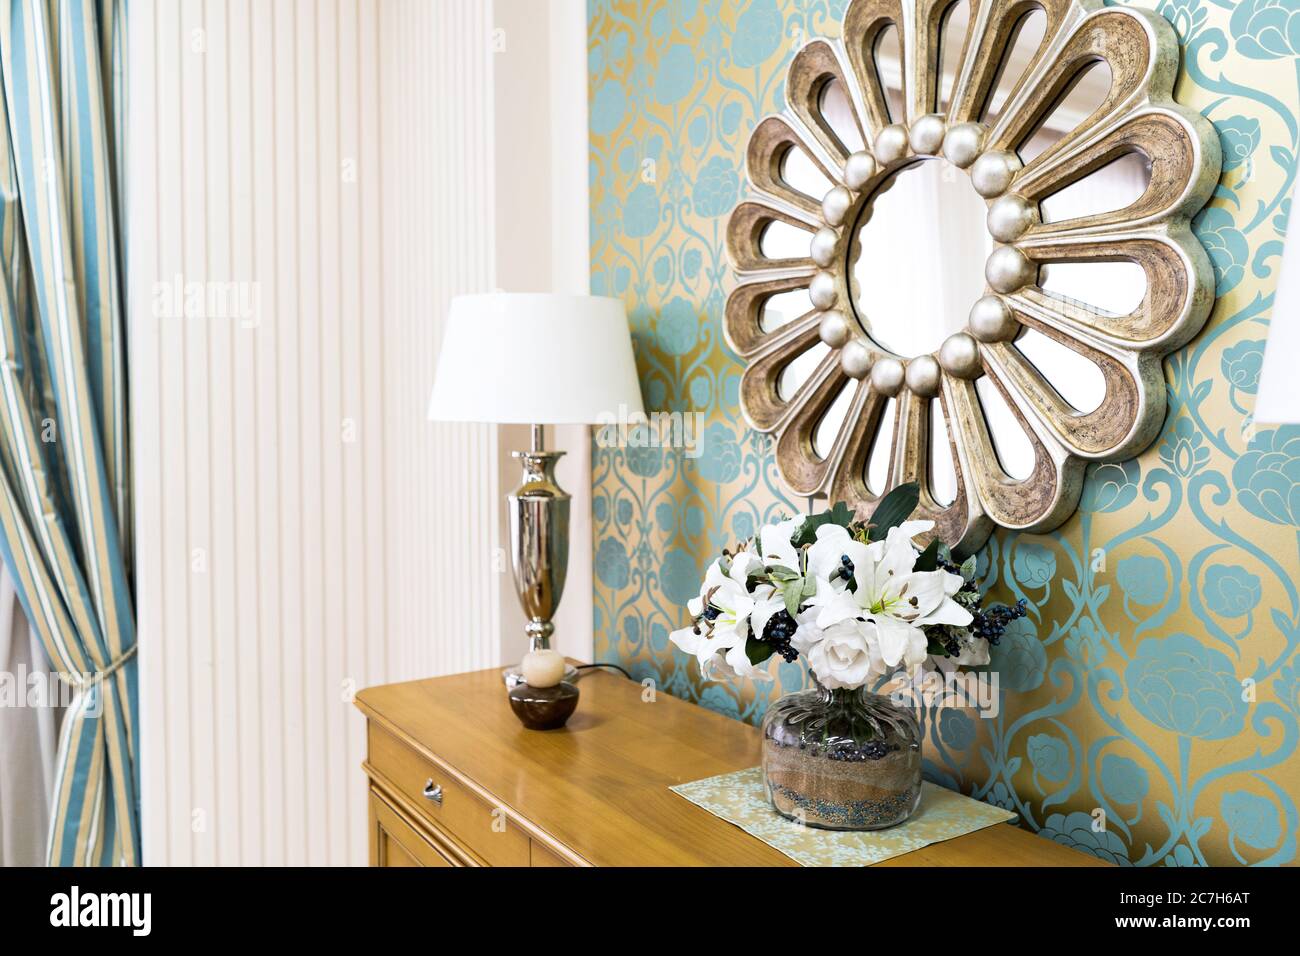 Stilvolle Vintage-Stil Home Interieur mit Holzkommode und dekoriert runden Spiegel. Symmetrische Leselampen auf Kommode. Selektive Fokussierung auf schöne Stockfoto